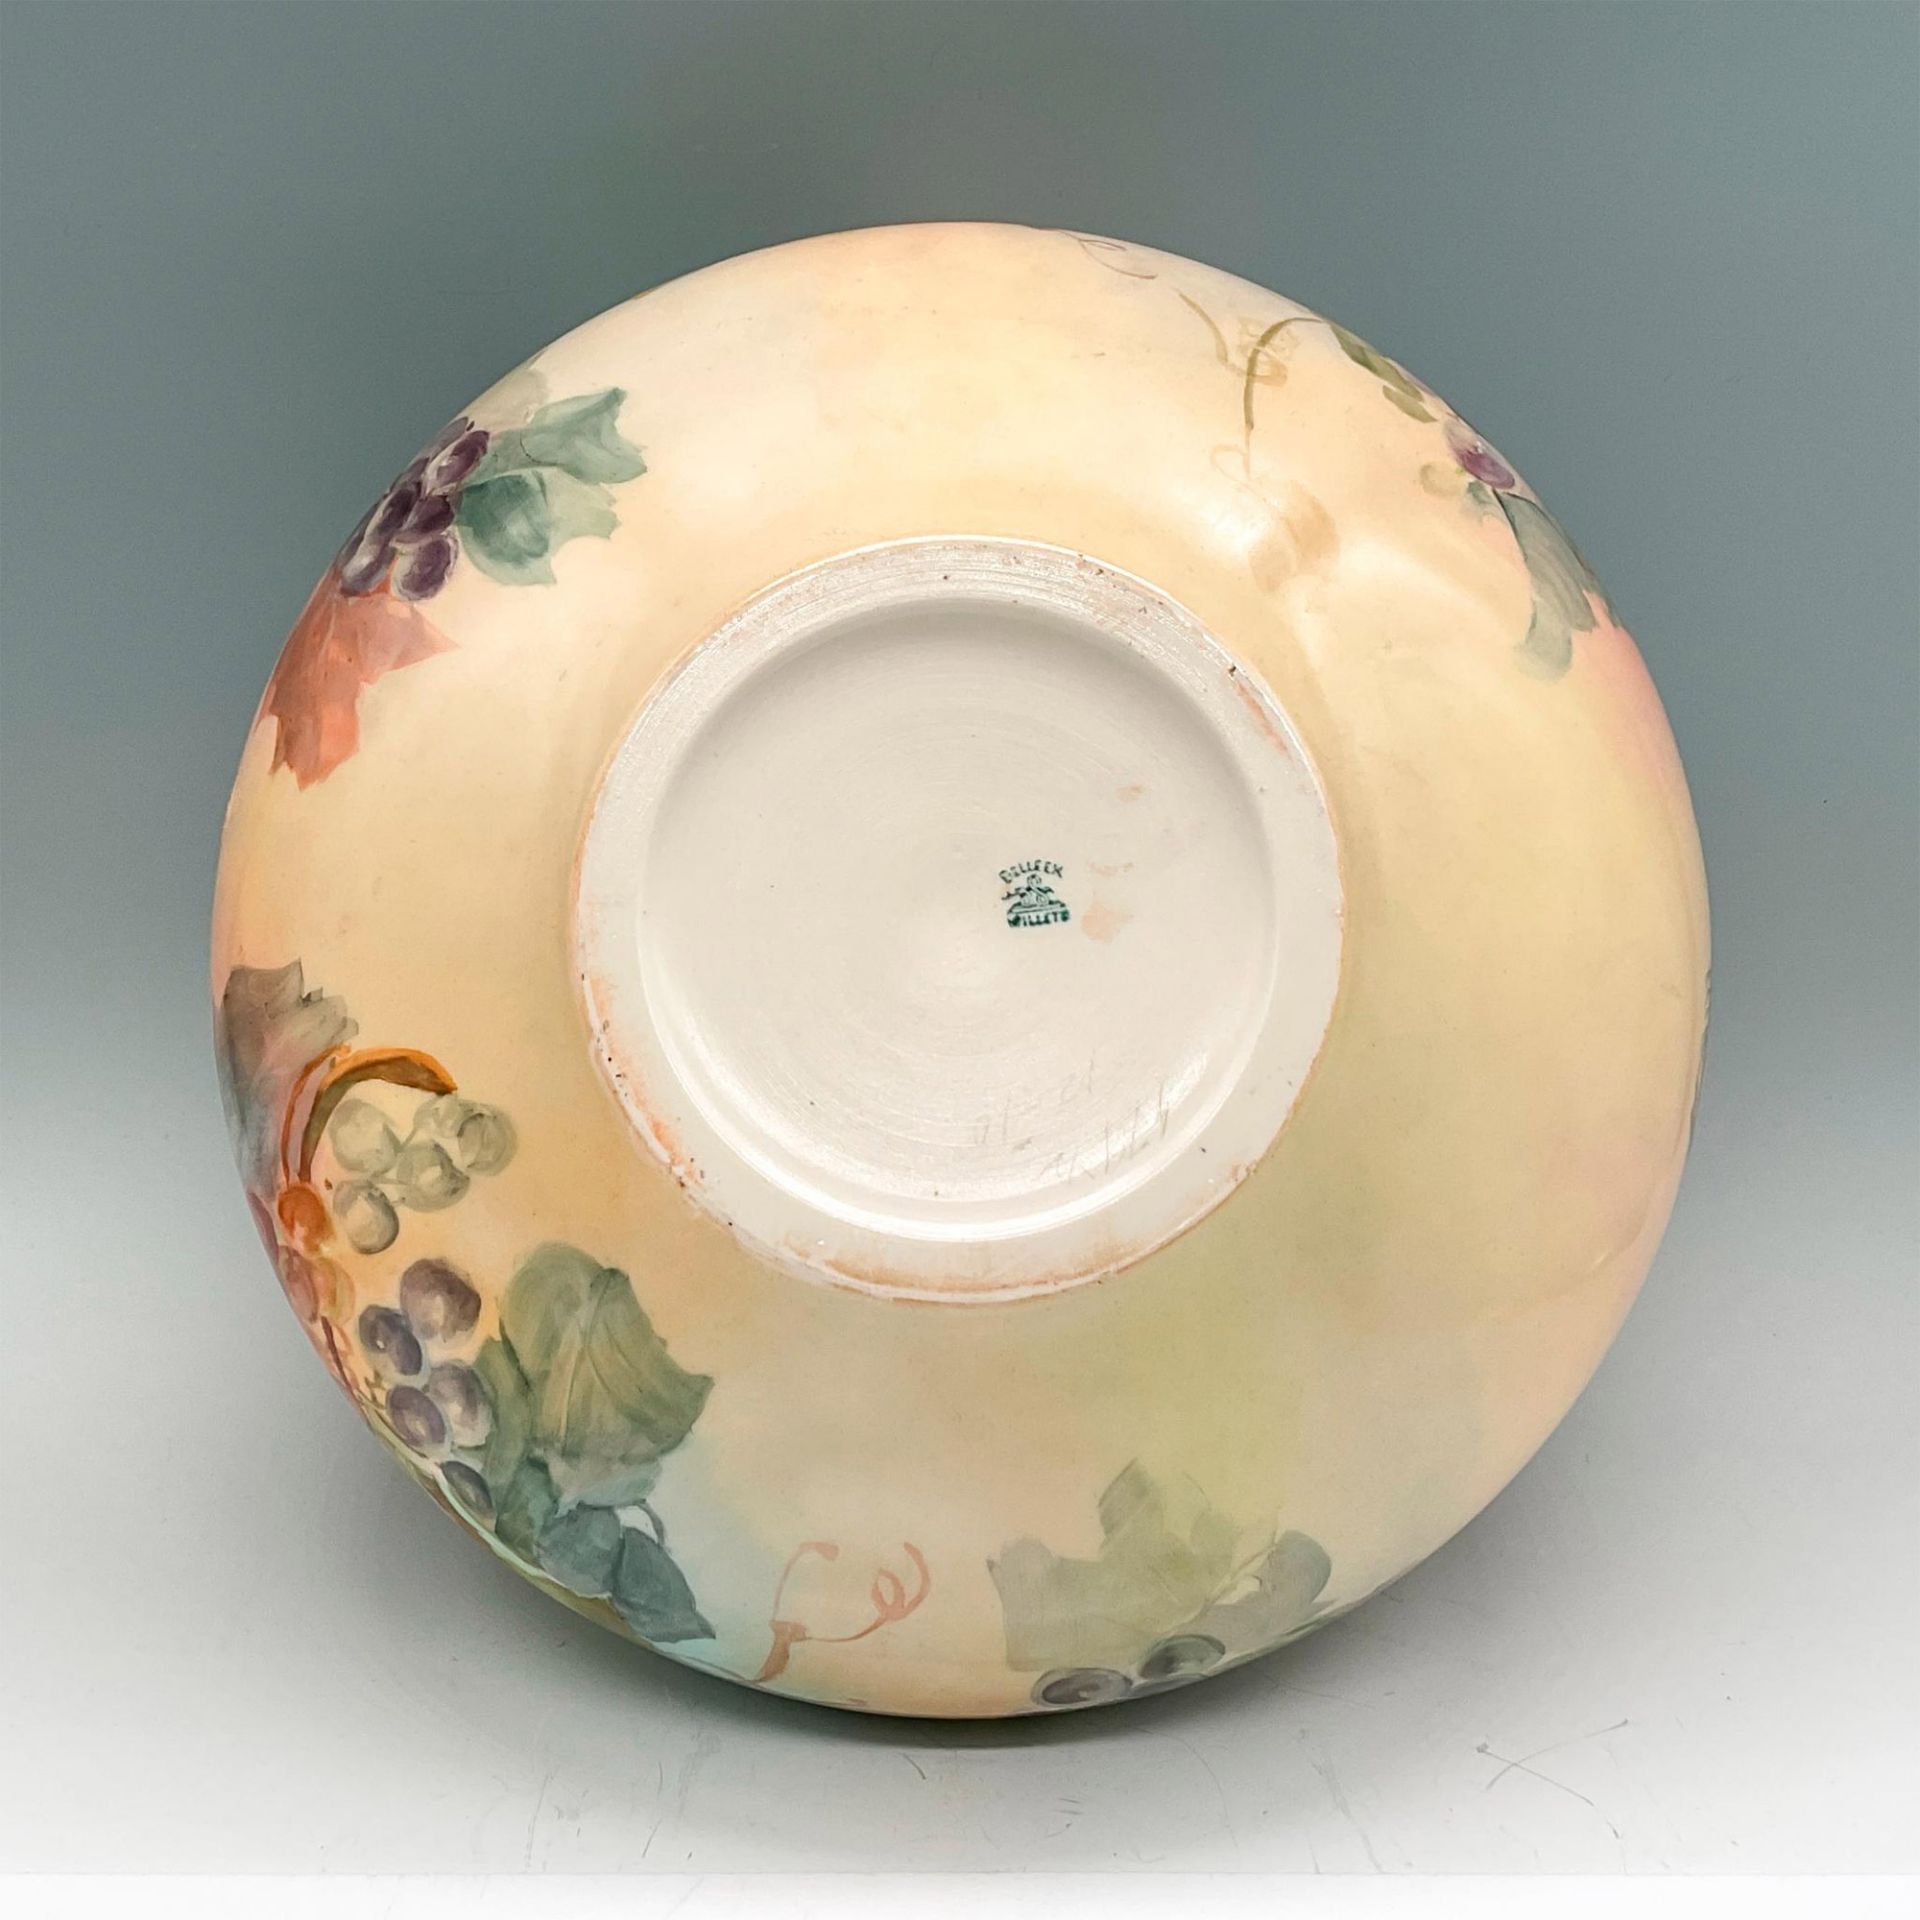 Belleek Willets Large Porcelain Bowl, Grapes - Image 3 of 3